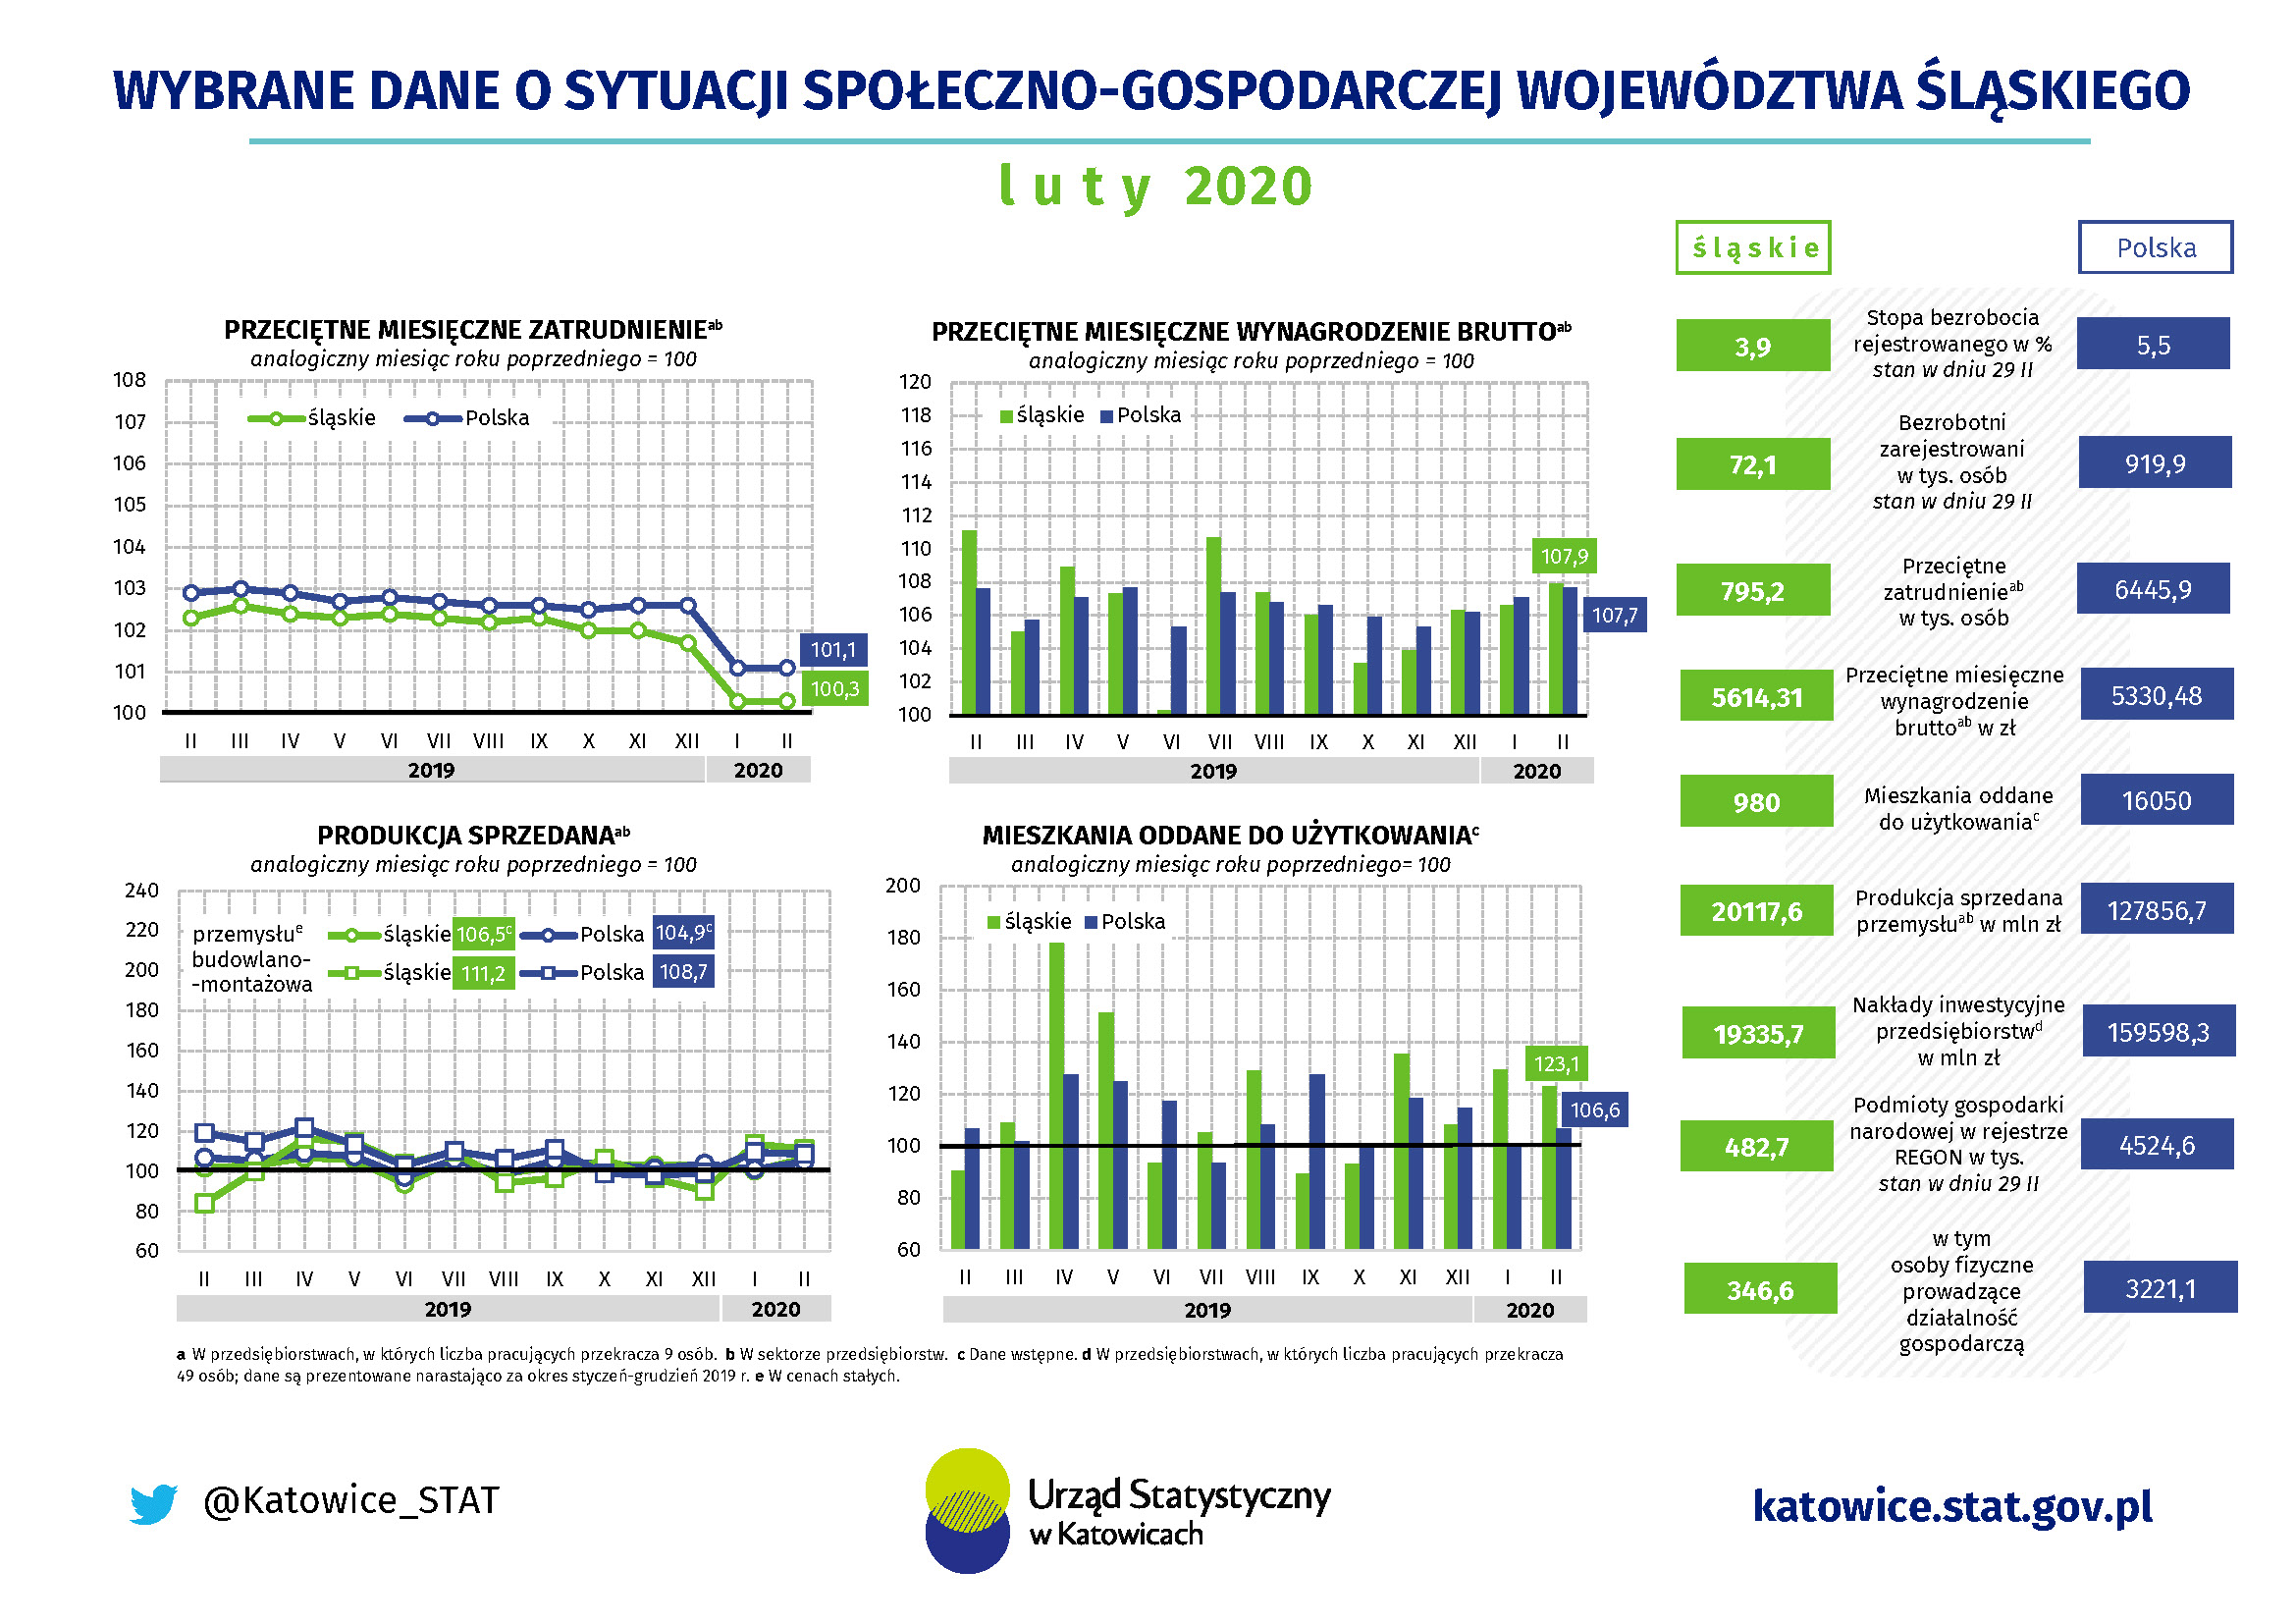 Infografika Wybrane dane o sytuacji społeczno-gospodarczej województwa śląskiego w lutym 2020 r.